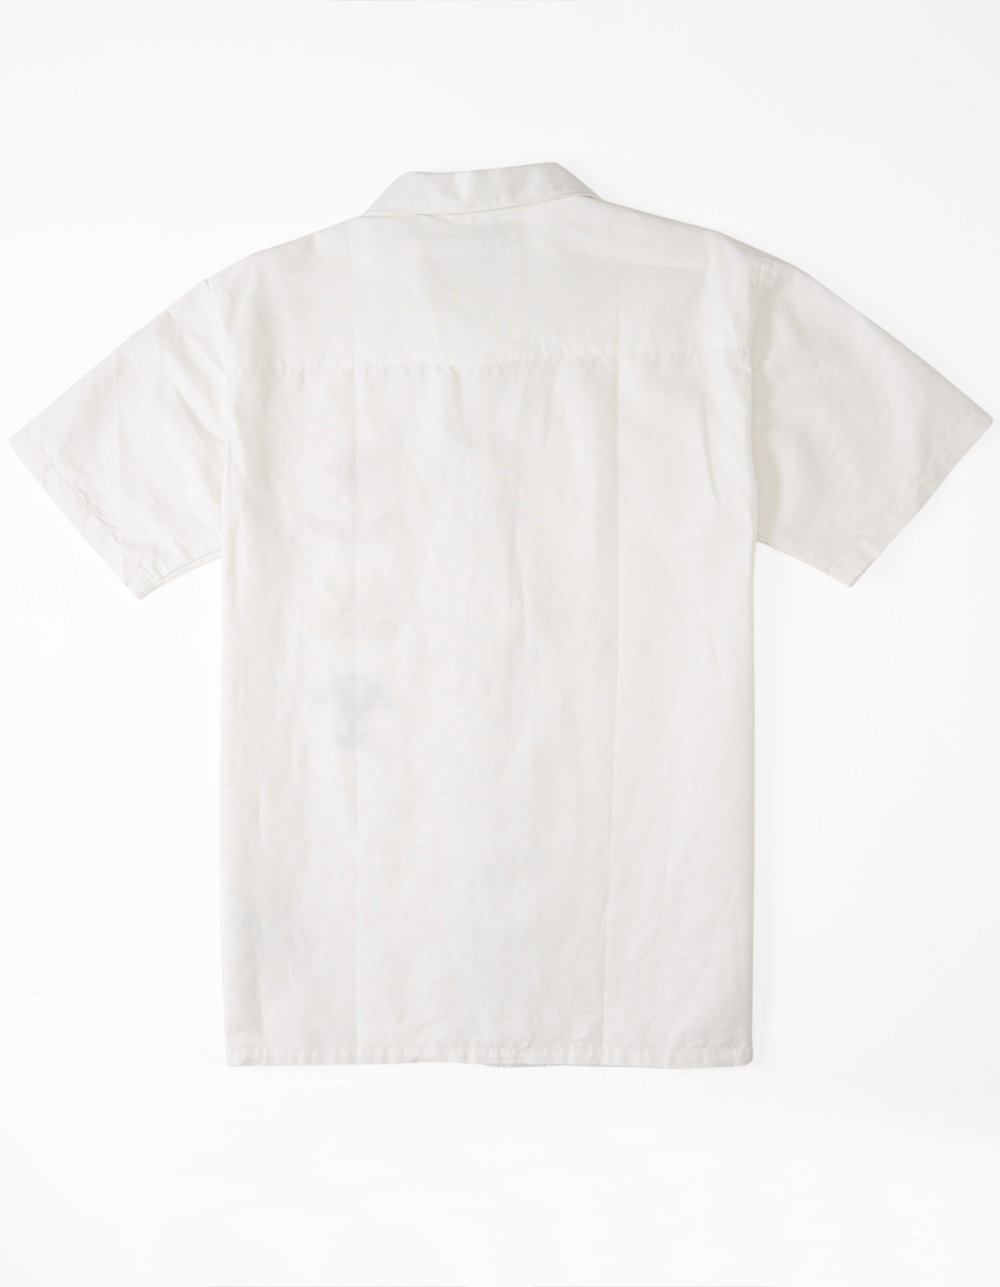 BILLABONG x Wrangler Sacred Sands Mens Hemp Button Up Shirt - WHITE ...